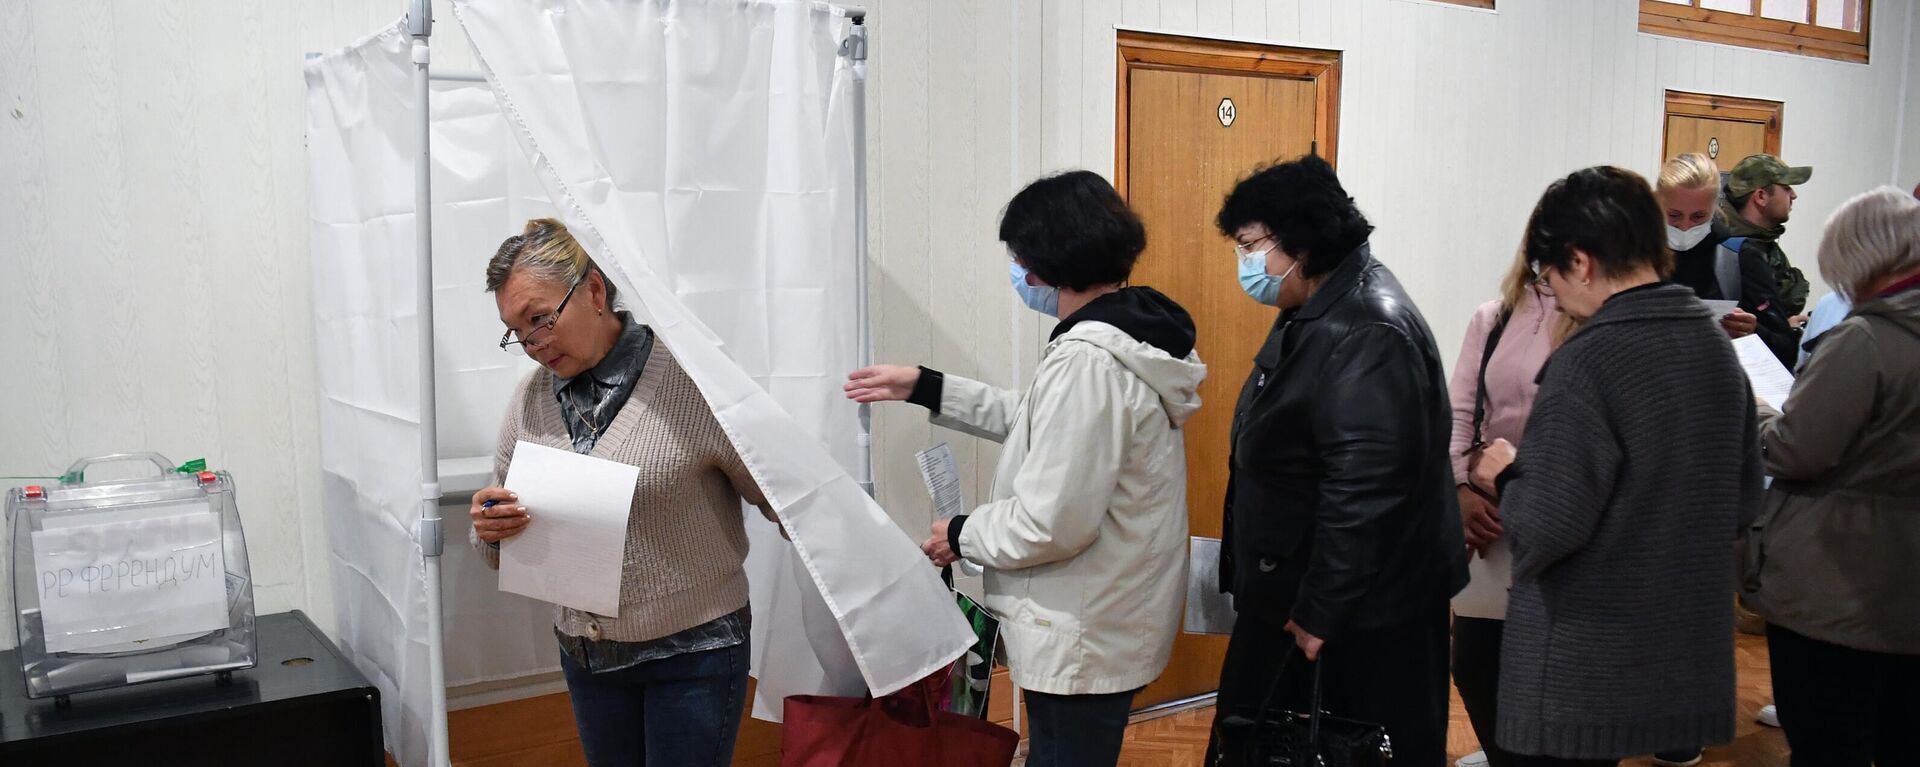 يصوت الناس في استفتاء على انضمام مقاطعة زابوروجيه إلى روسيا في مركز اقتراع في مؤسسة ميليتوبول، 23 سبتمبر 2022 - سبوتنيك عربي, 1920, 26.09.2022